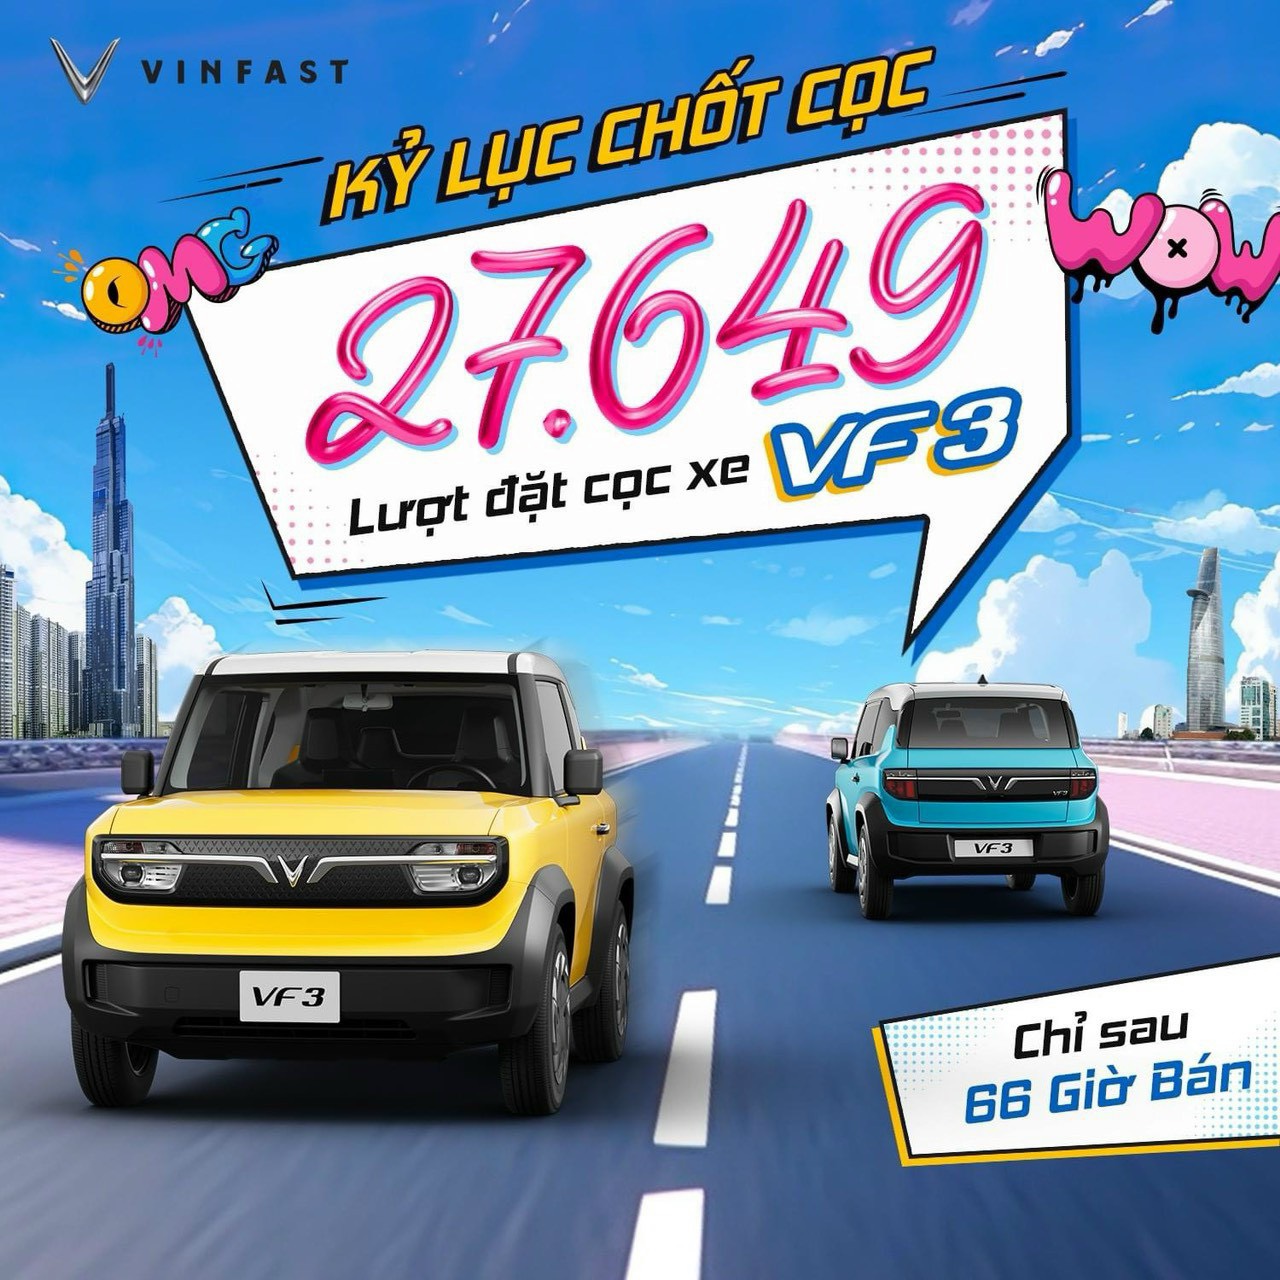 Vinfast ghi nhận gần 28.000 đơn đặt cọc mua xe VF 3 sau 66 giờ 